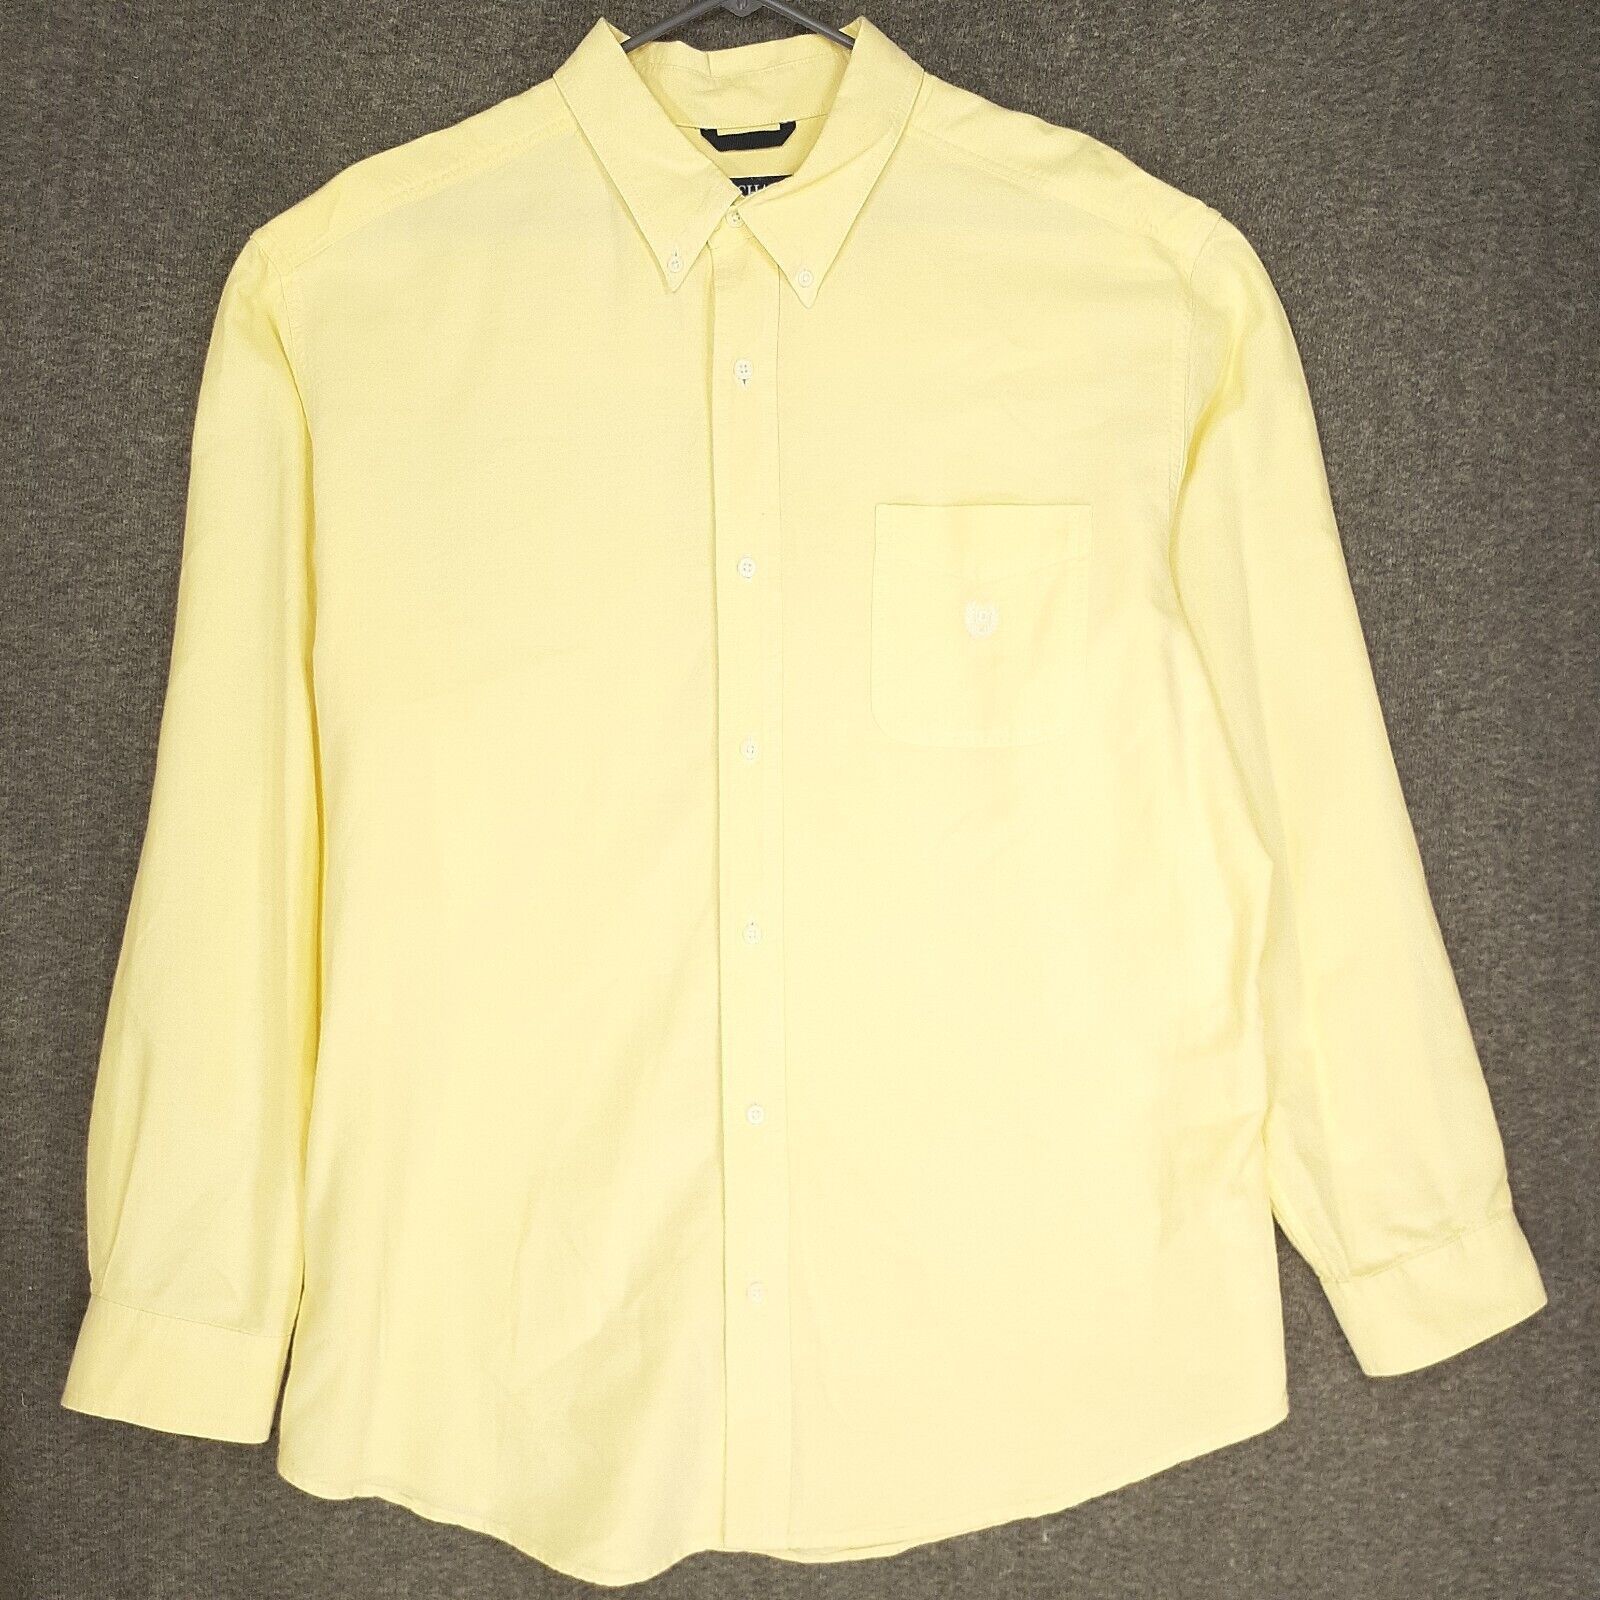 Chaps Chaps ralph lauren button up shirt Adult 2XL light yellow long ...